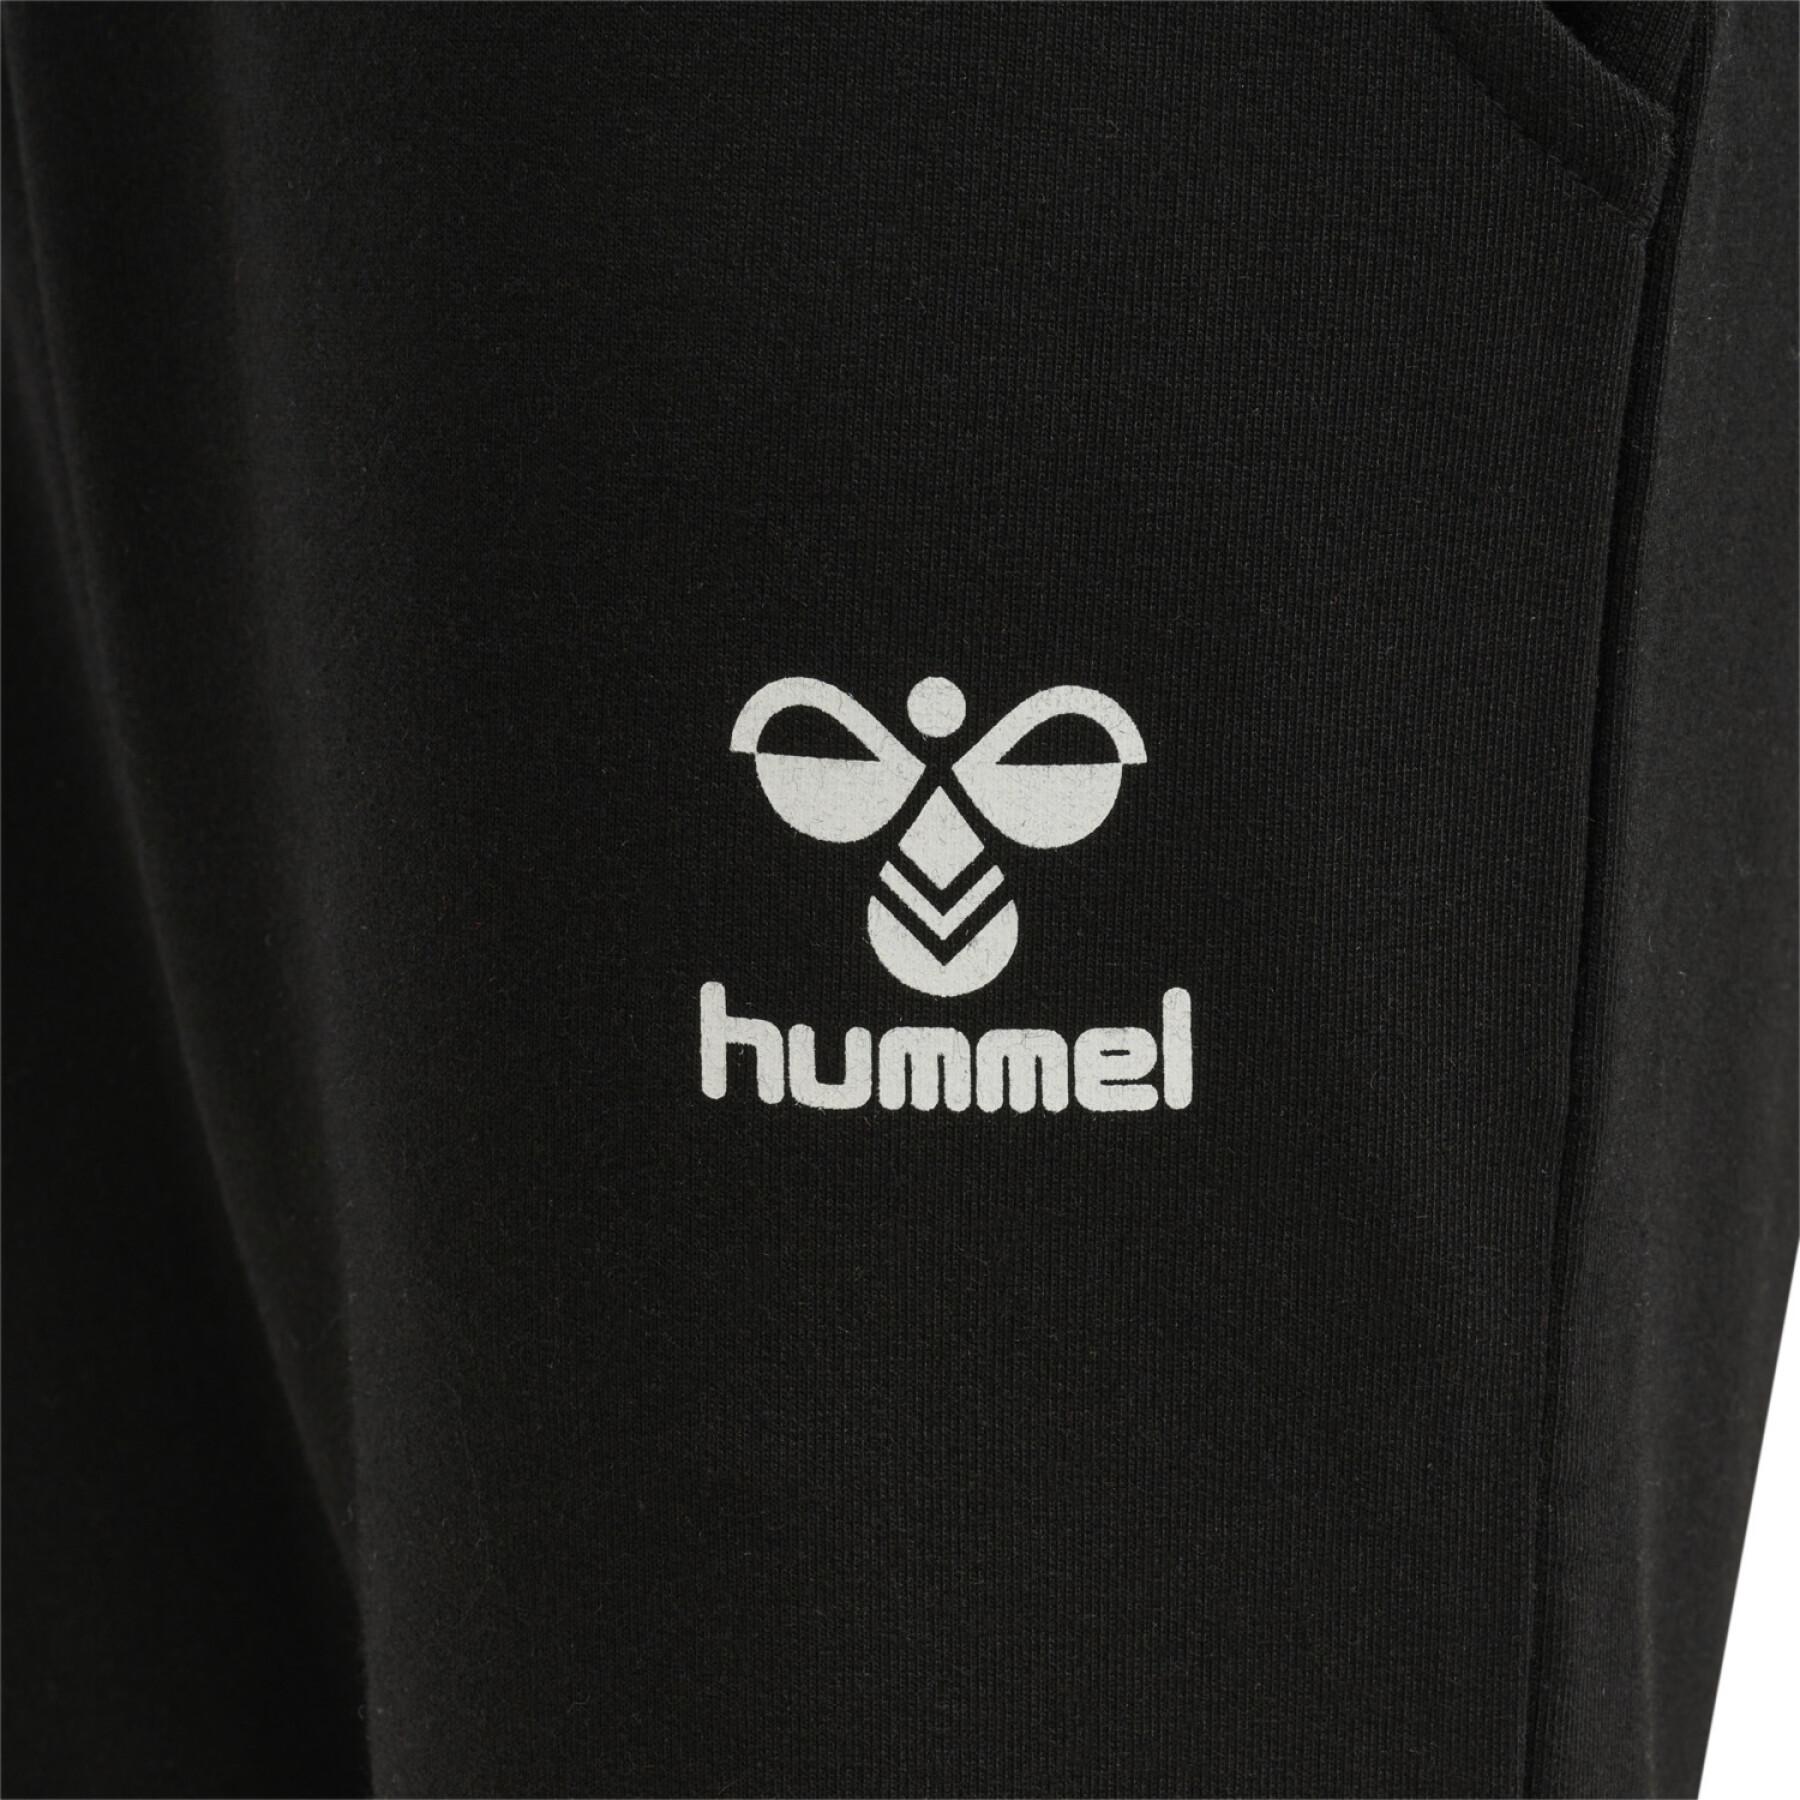 Children's jogging suit Hummel Nuette